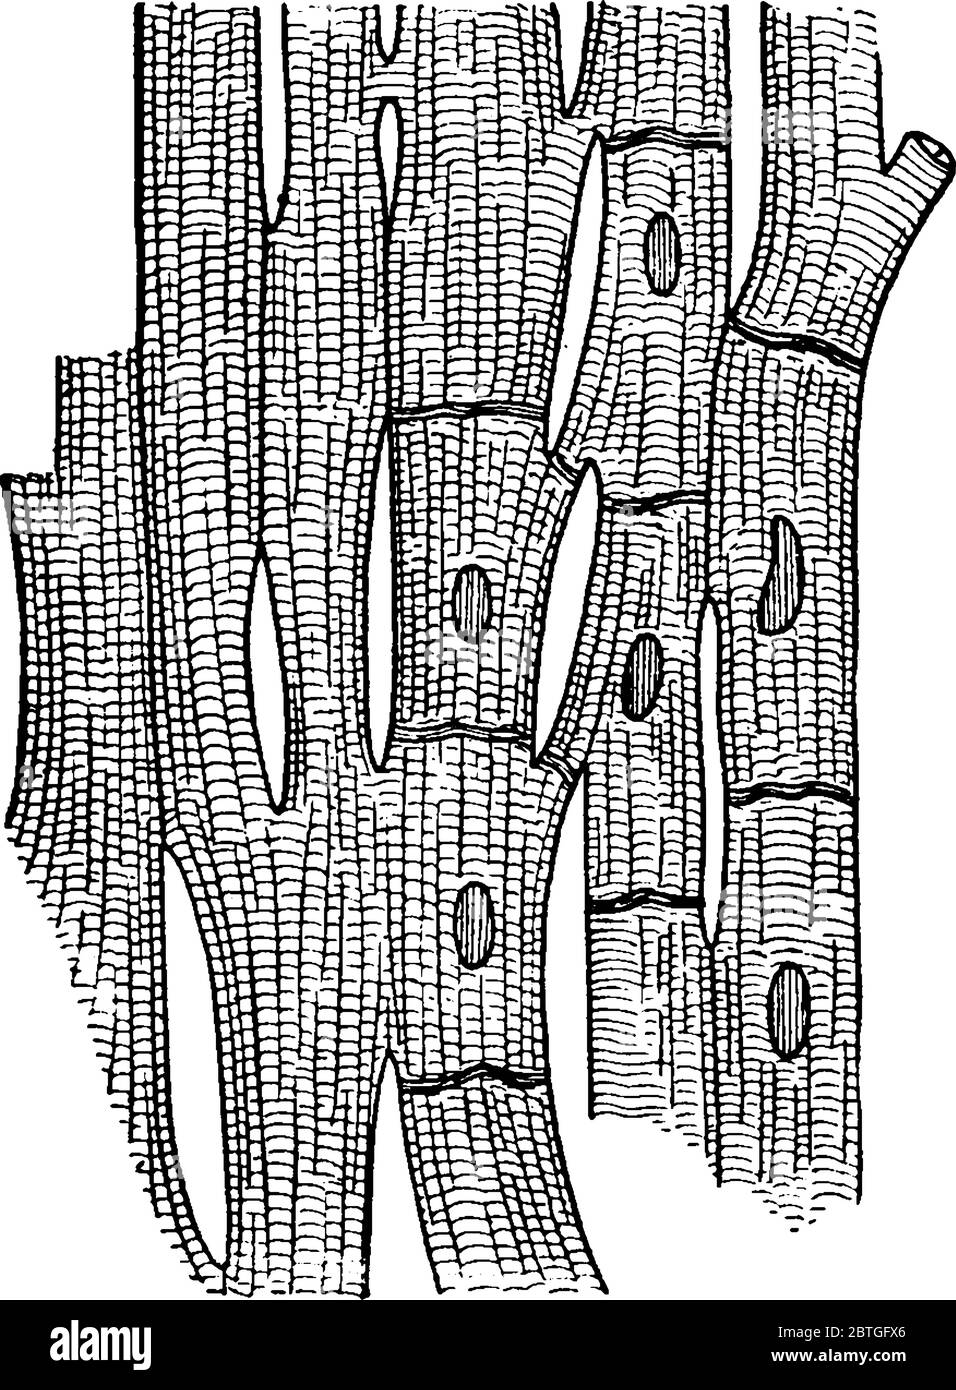 Una rappresentazione tipica delle fibre muscolari del cuore che mostra le striature e le giunzioni delle cellule, fortemente ingrandite., disegno di linea vintage Illustrazione Vettoriale